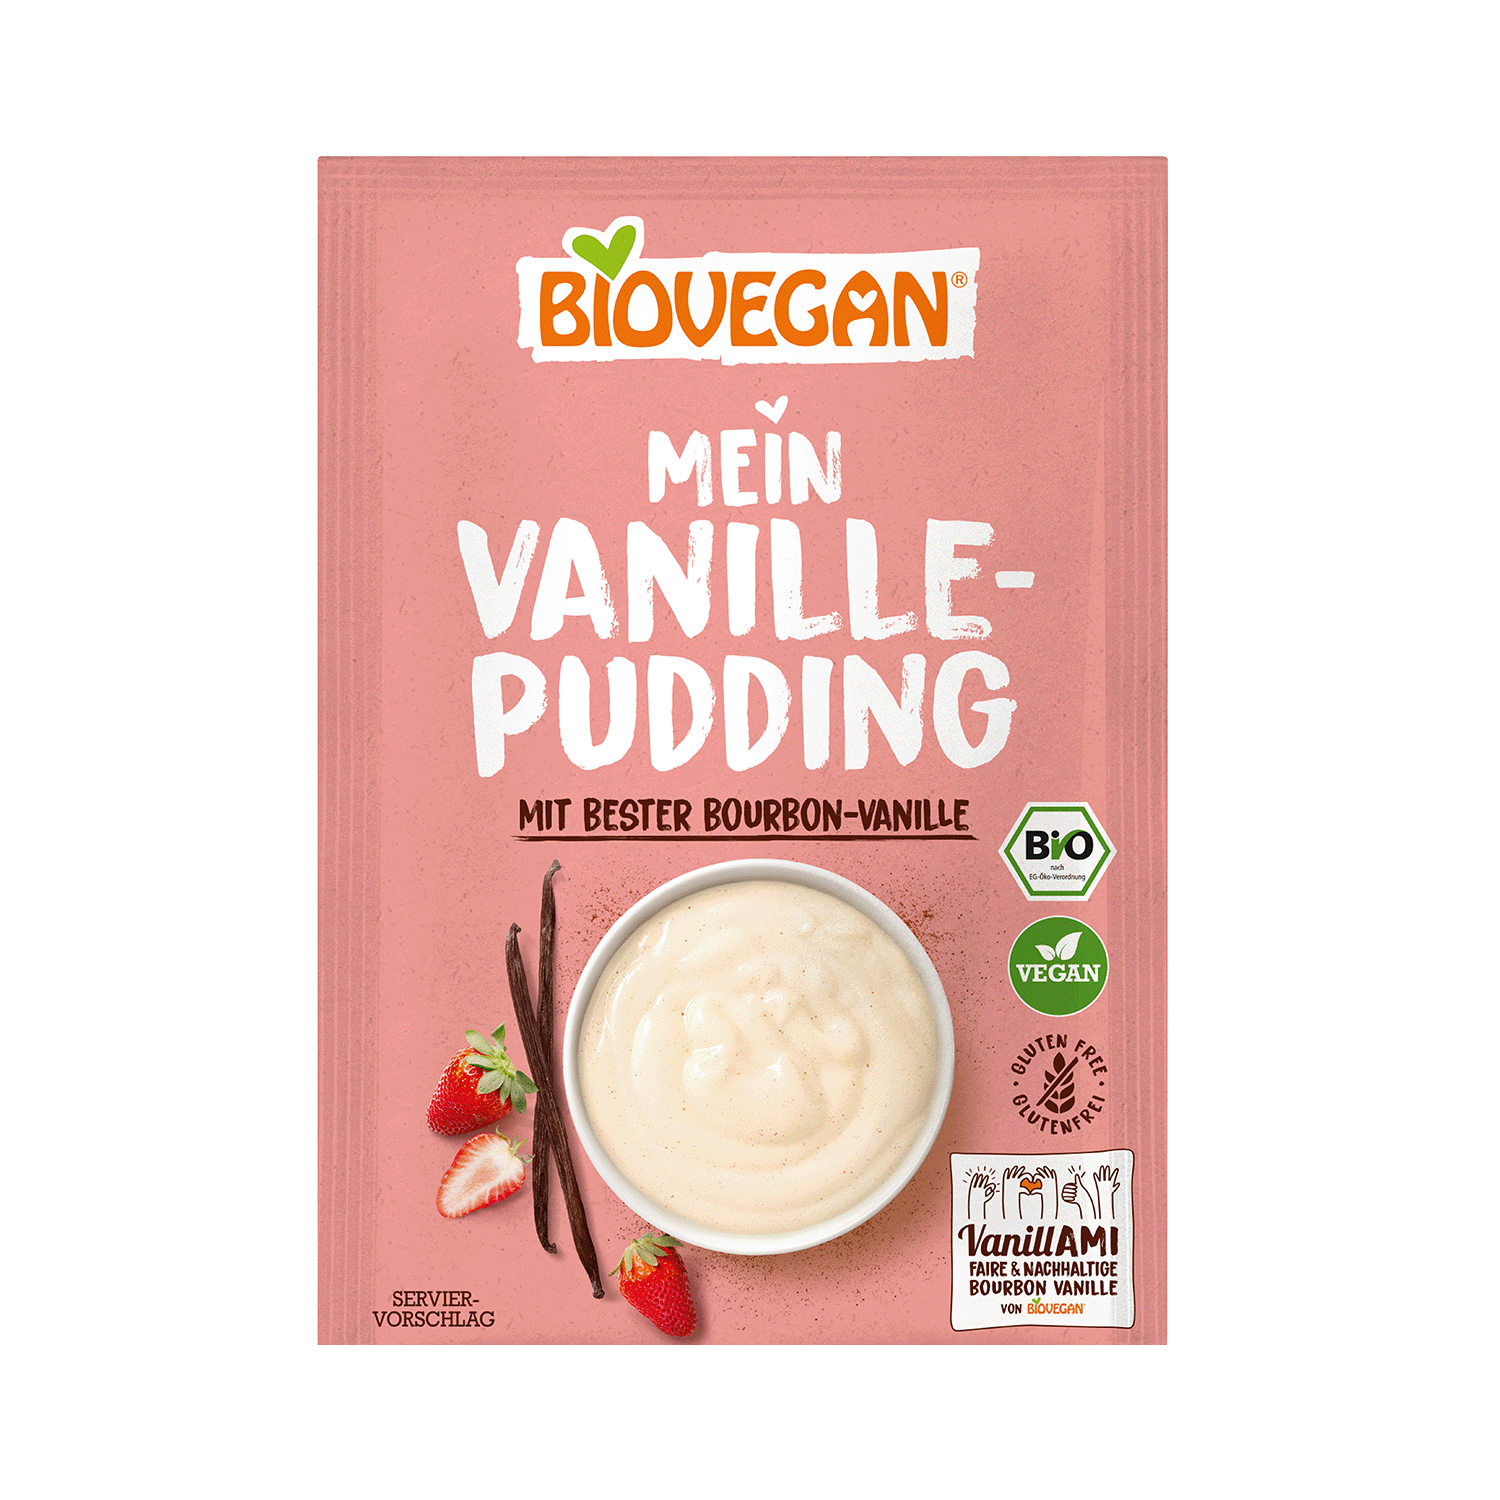 Mein Vanille Pudding mit Bourbon-Vanille, BIO, 33g